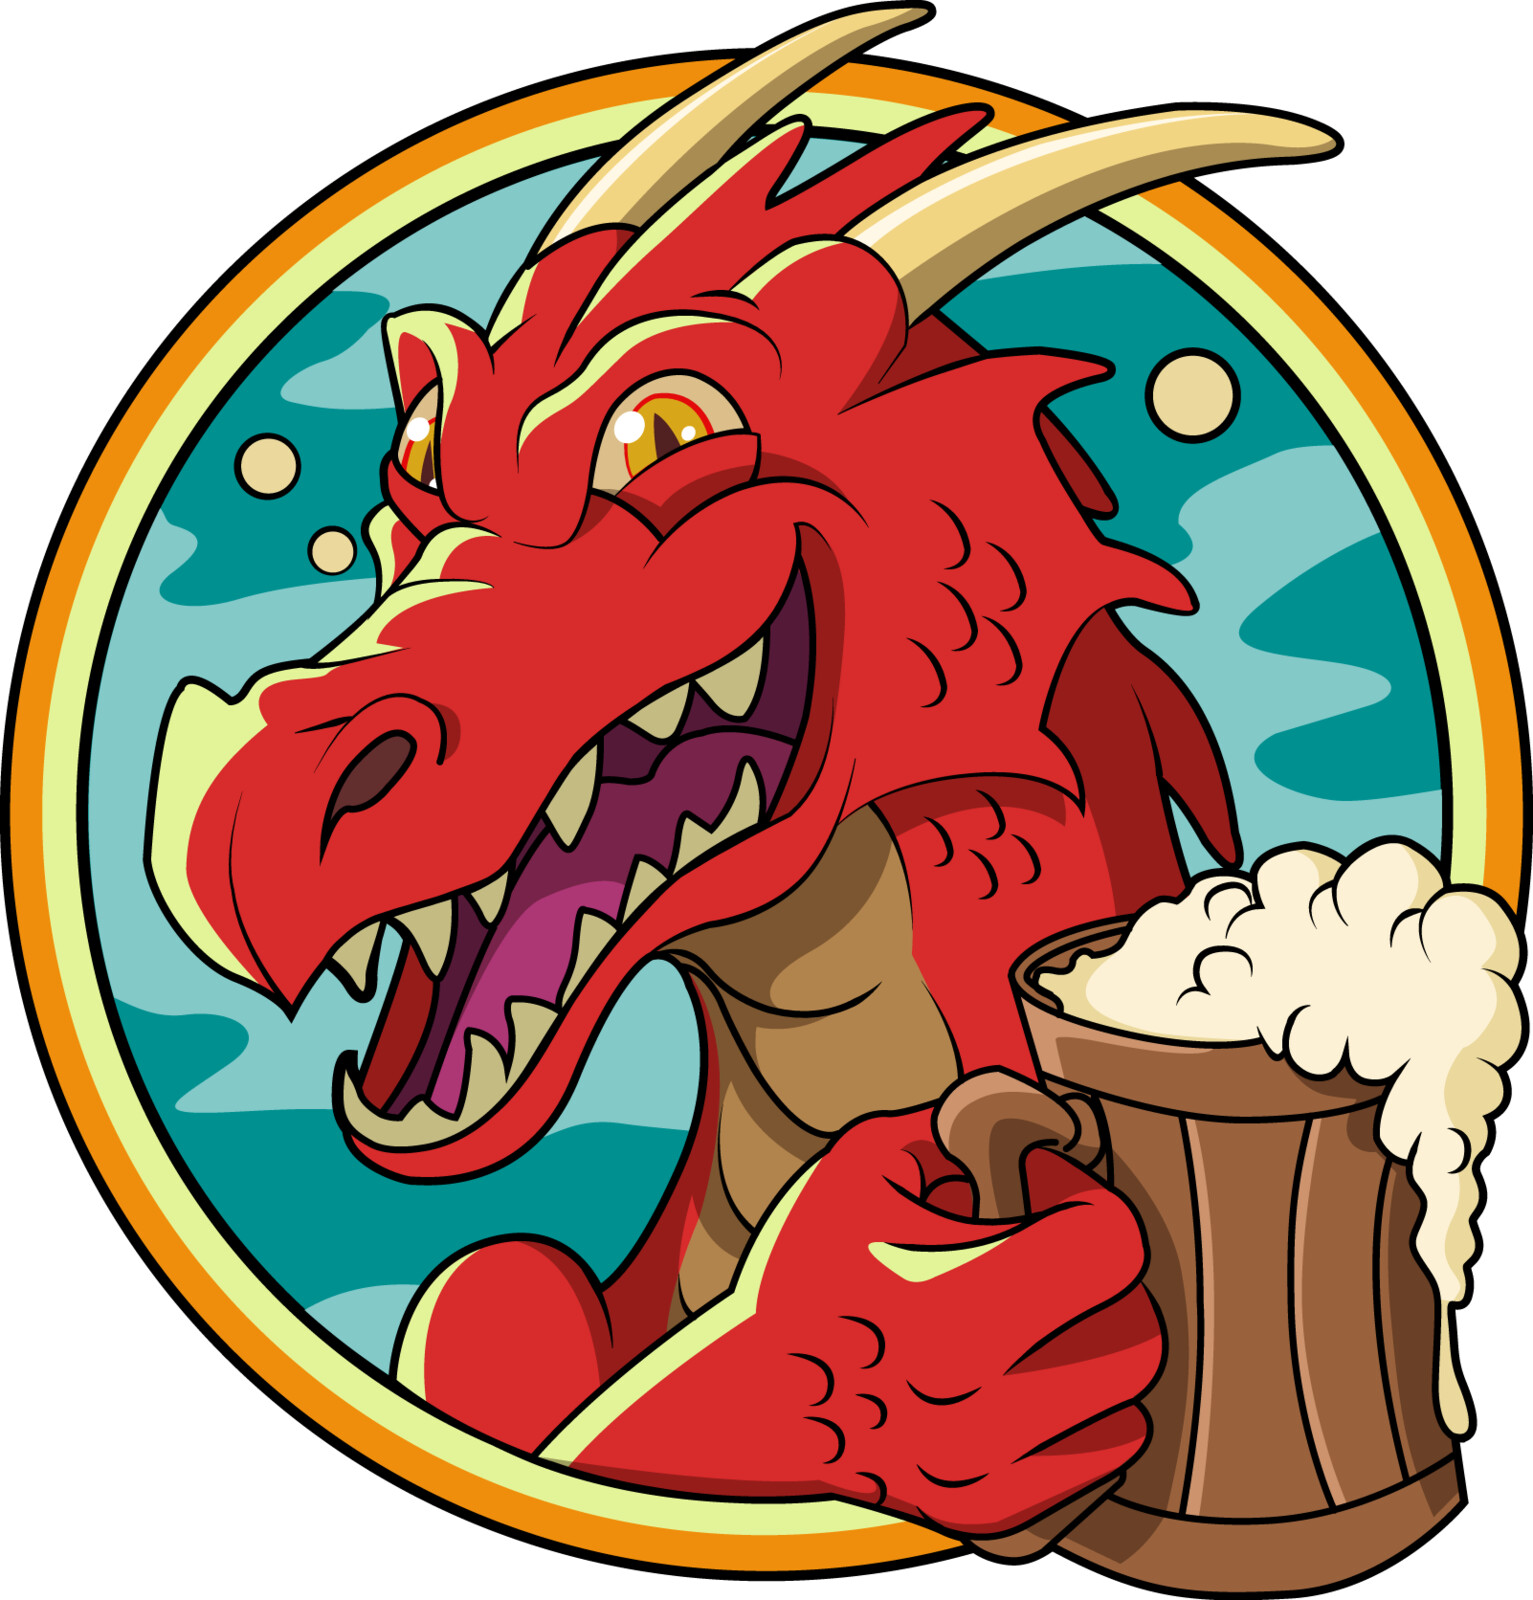 Logo design for Drunken Dragon Music:
https://soundcloud.com/drunkendragonmusic